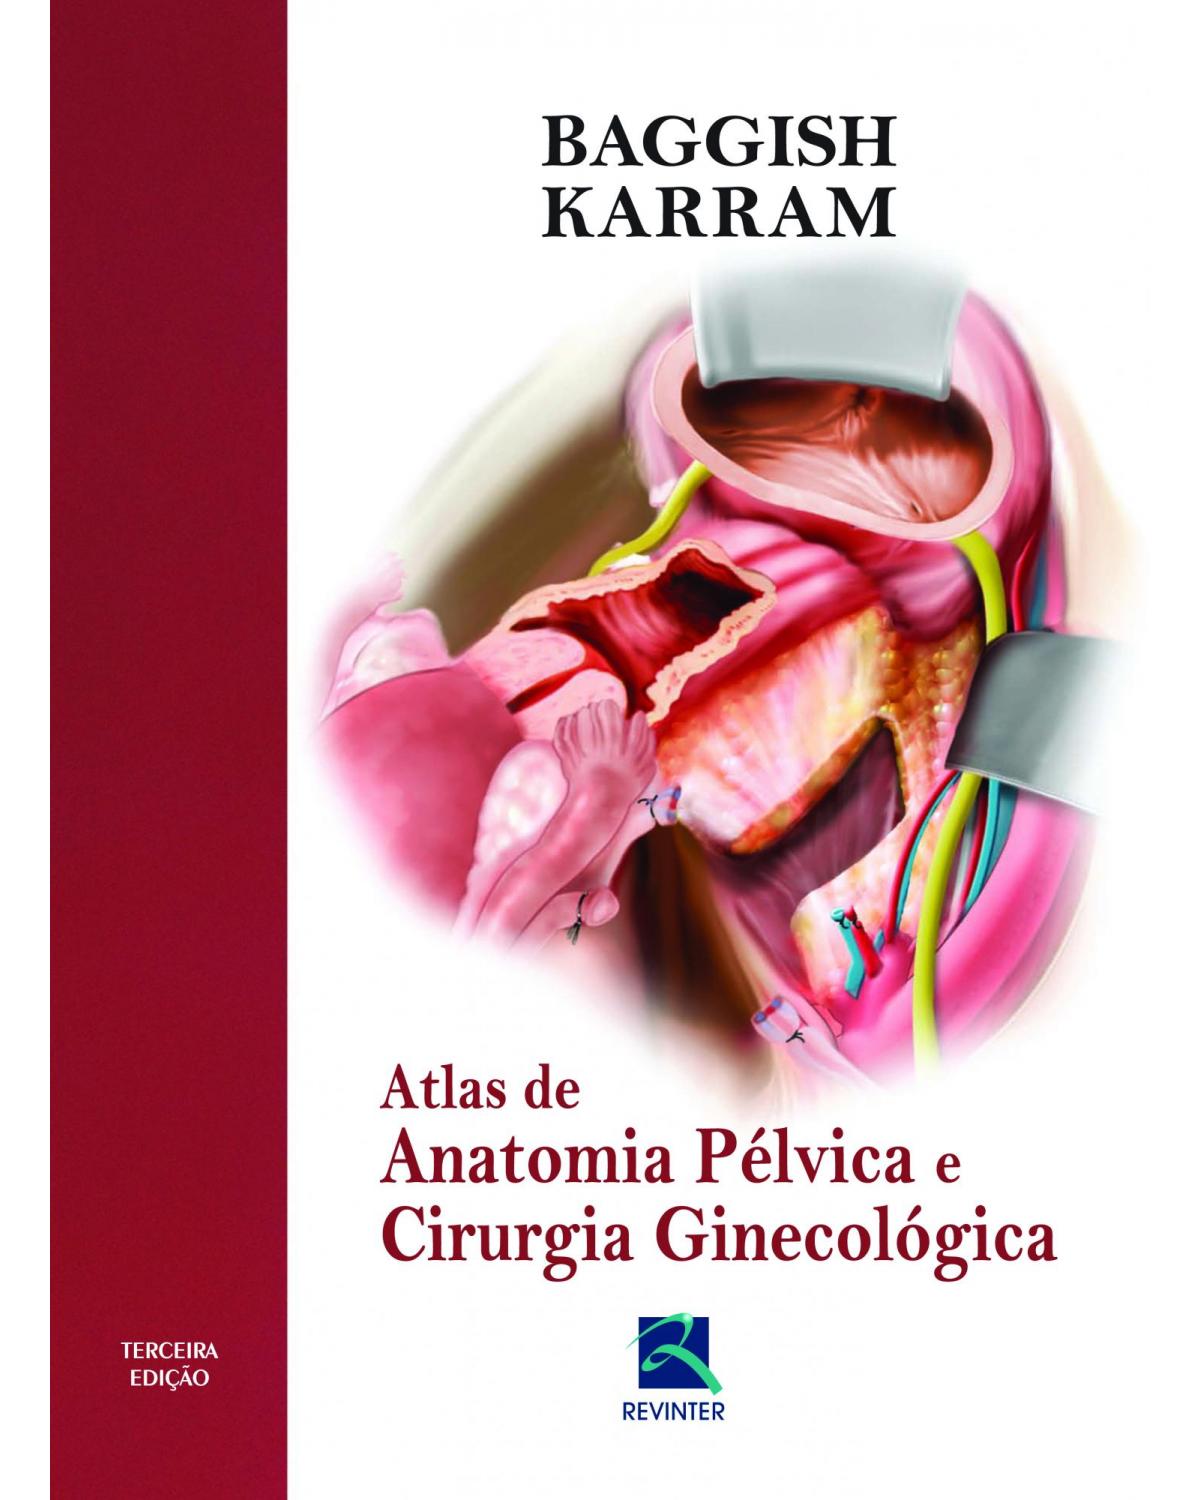 Atlas de anatomia pélvica e cirurgia ginecológica - 3ª Edição | 2012